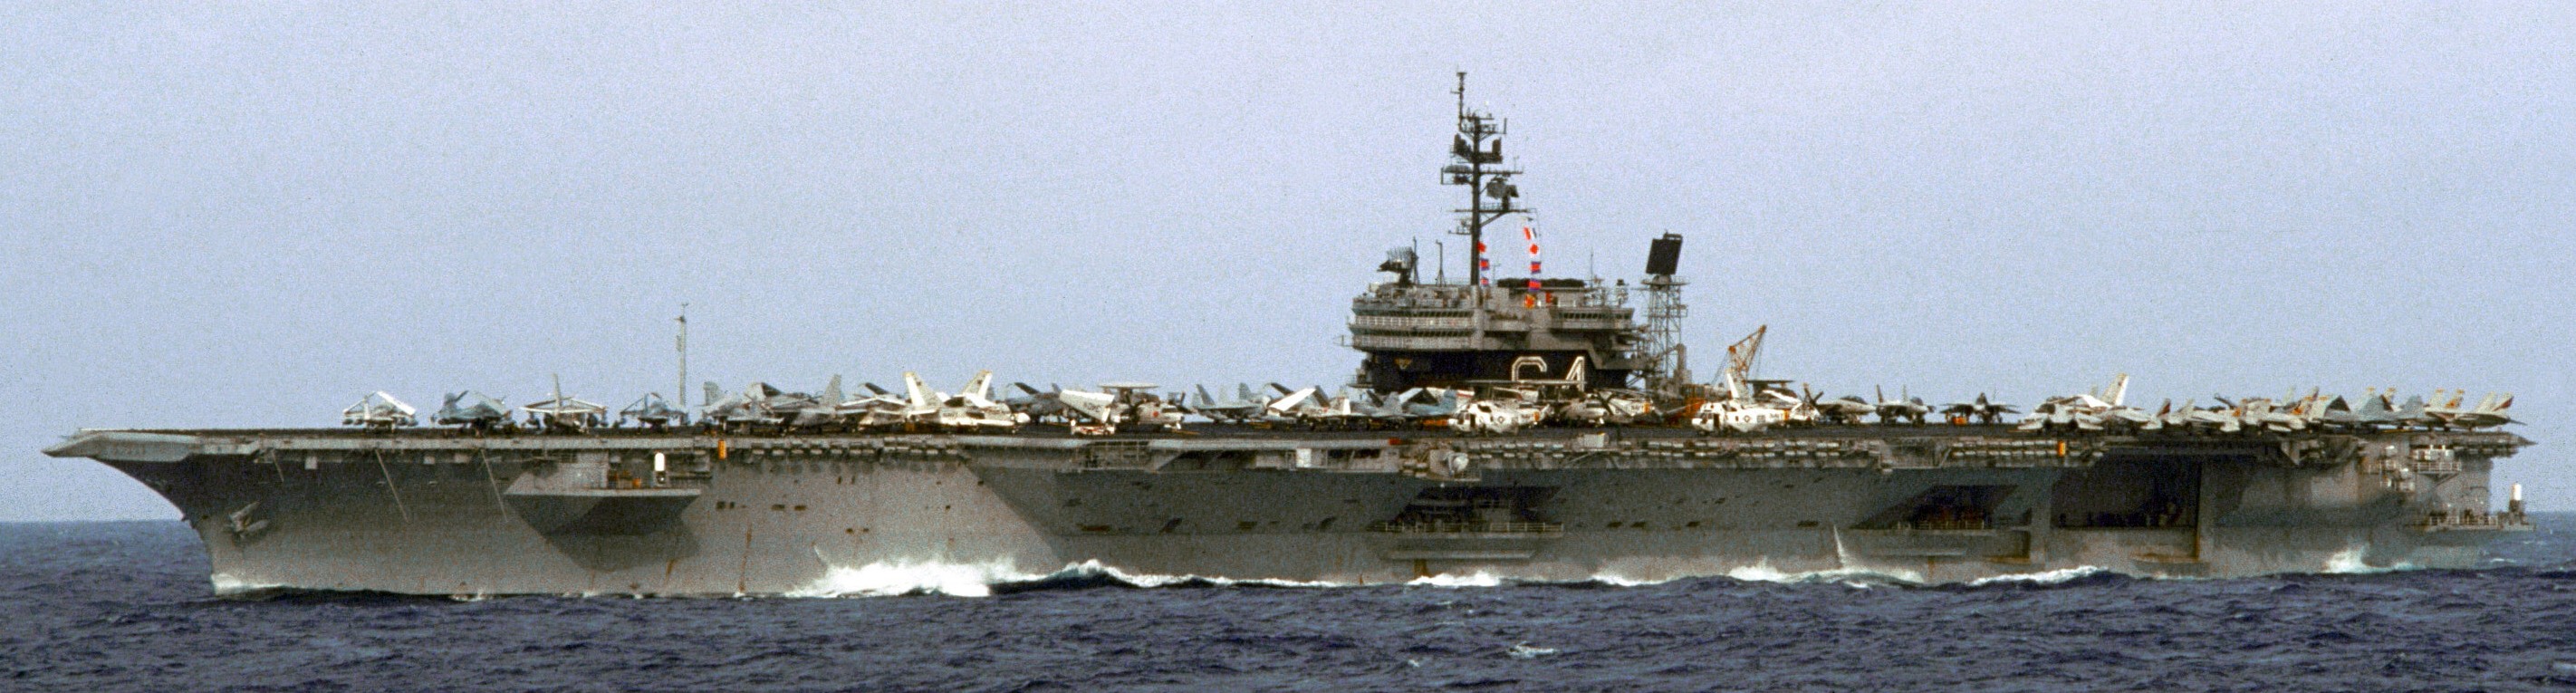 cv-64 uss constellation kitty hawk class aircraft carrier us navy 84